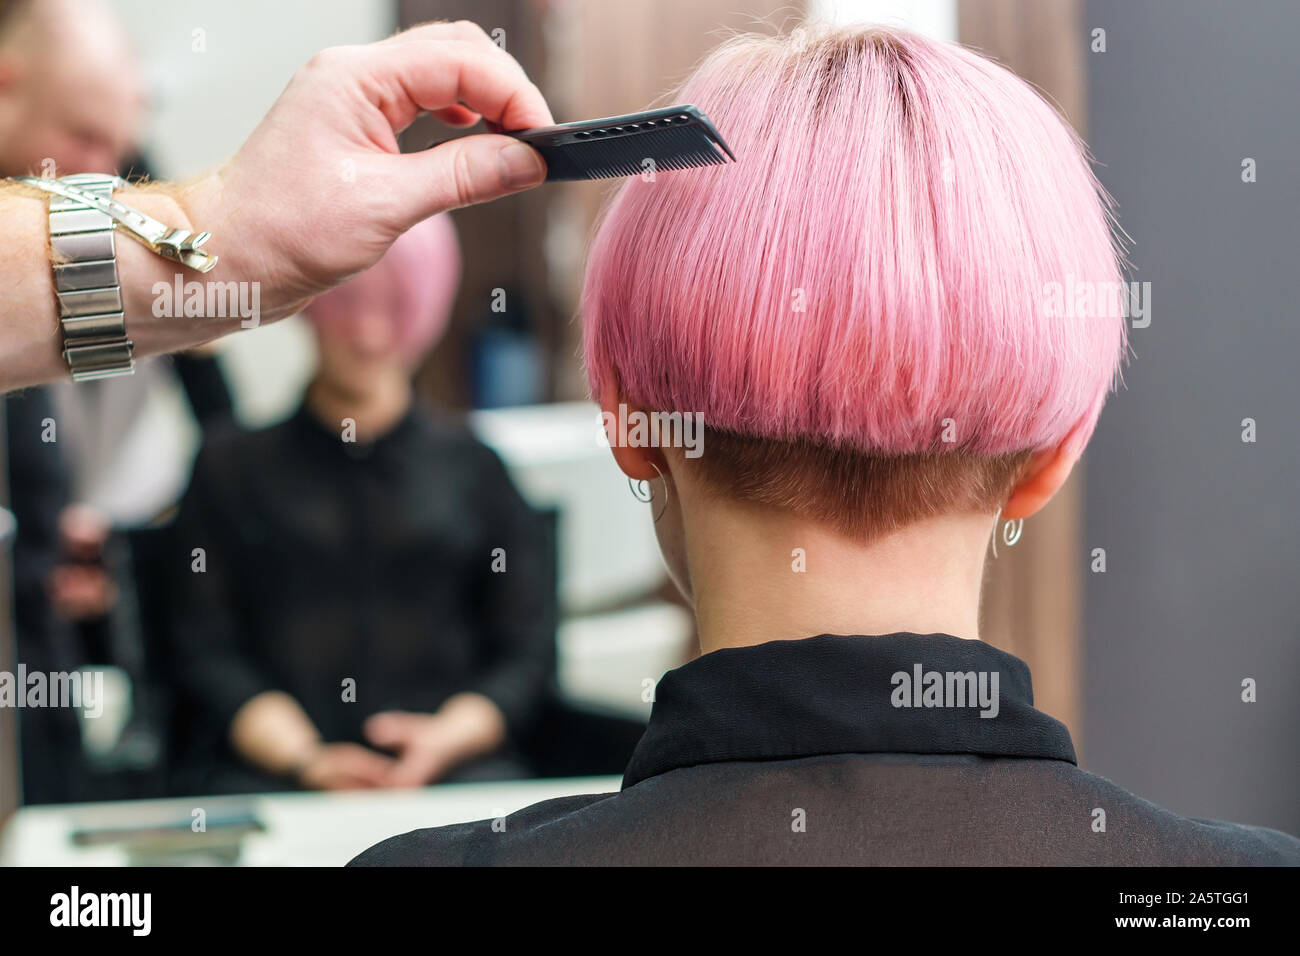 La peluquería está usando peine el pelo rosa para mujeres en un salón de  belleza. Lado masculino es el peinado mujer corta pelo de color rosa en la  peluquería Fotografía de stock -